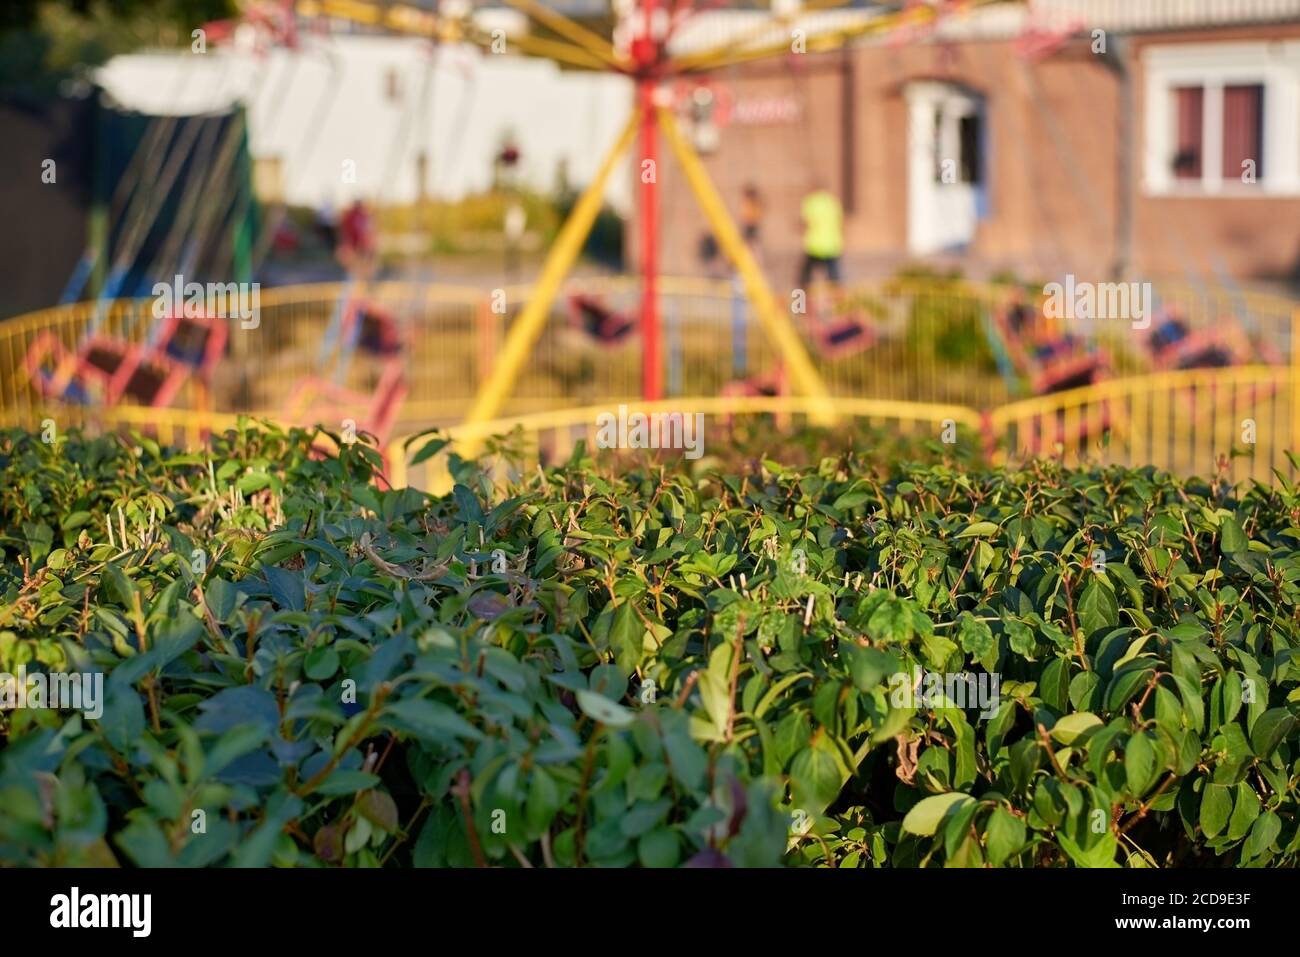 Carrousel de chaînes pour enfants en mouvement hors foyer, buisson vert lors d'une journée d'été au premier plan. Banque D'Images